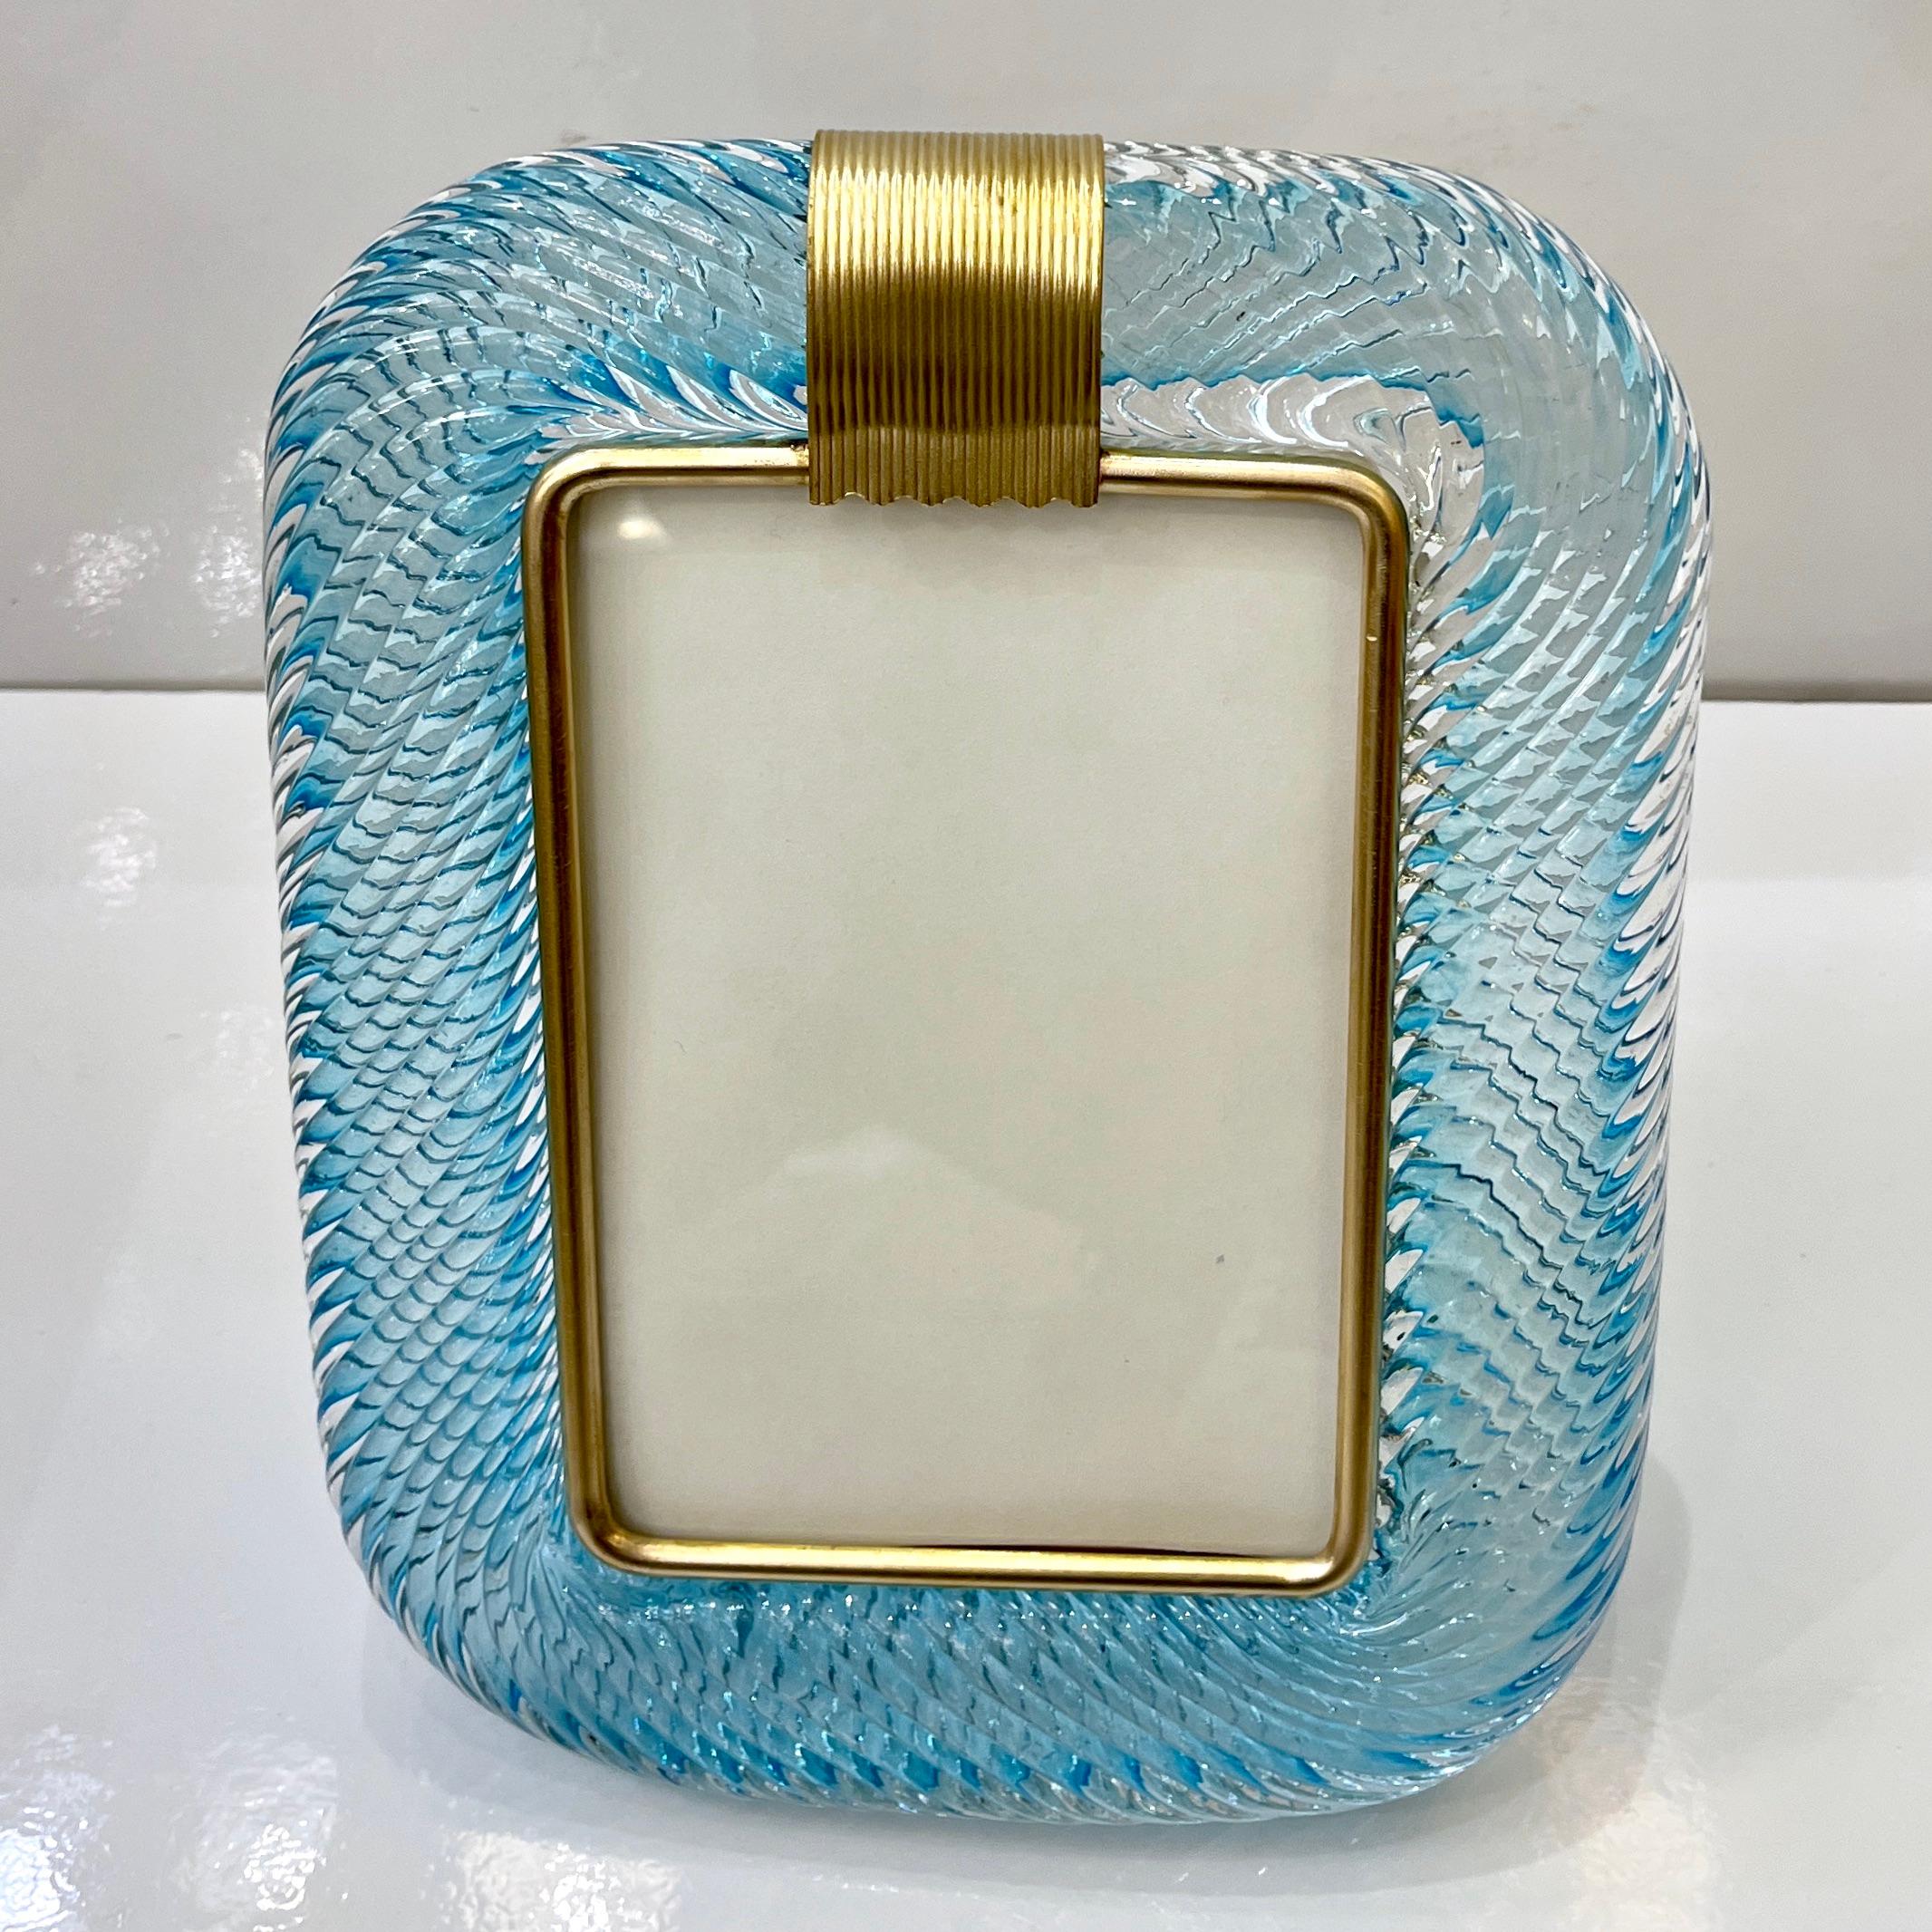 Cadre photo vertical au design vénitien moderne et sophistiqué, en verre de Murano épais et soufflé, travaillé dans une luxuriante couleur bleu bébé turquoise, par Barovier&Toso, pièce signée. La texture élégante du cadre en verre étroitement